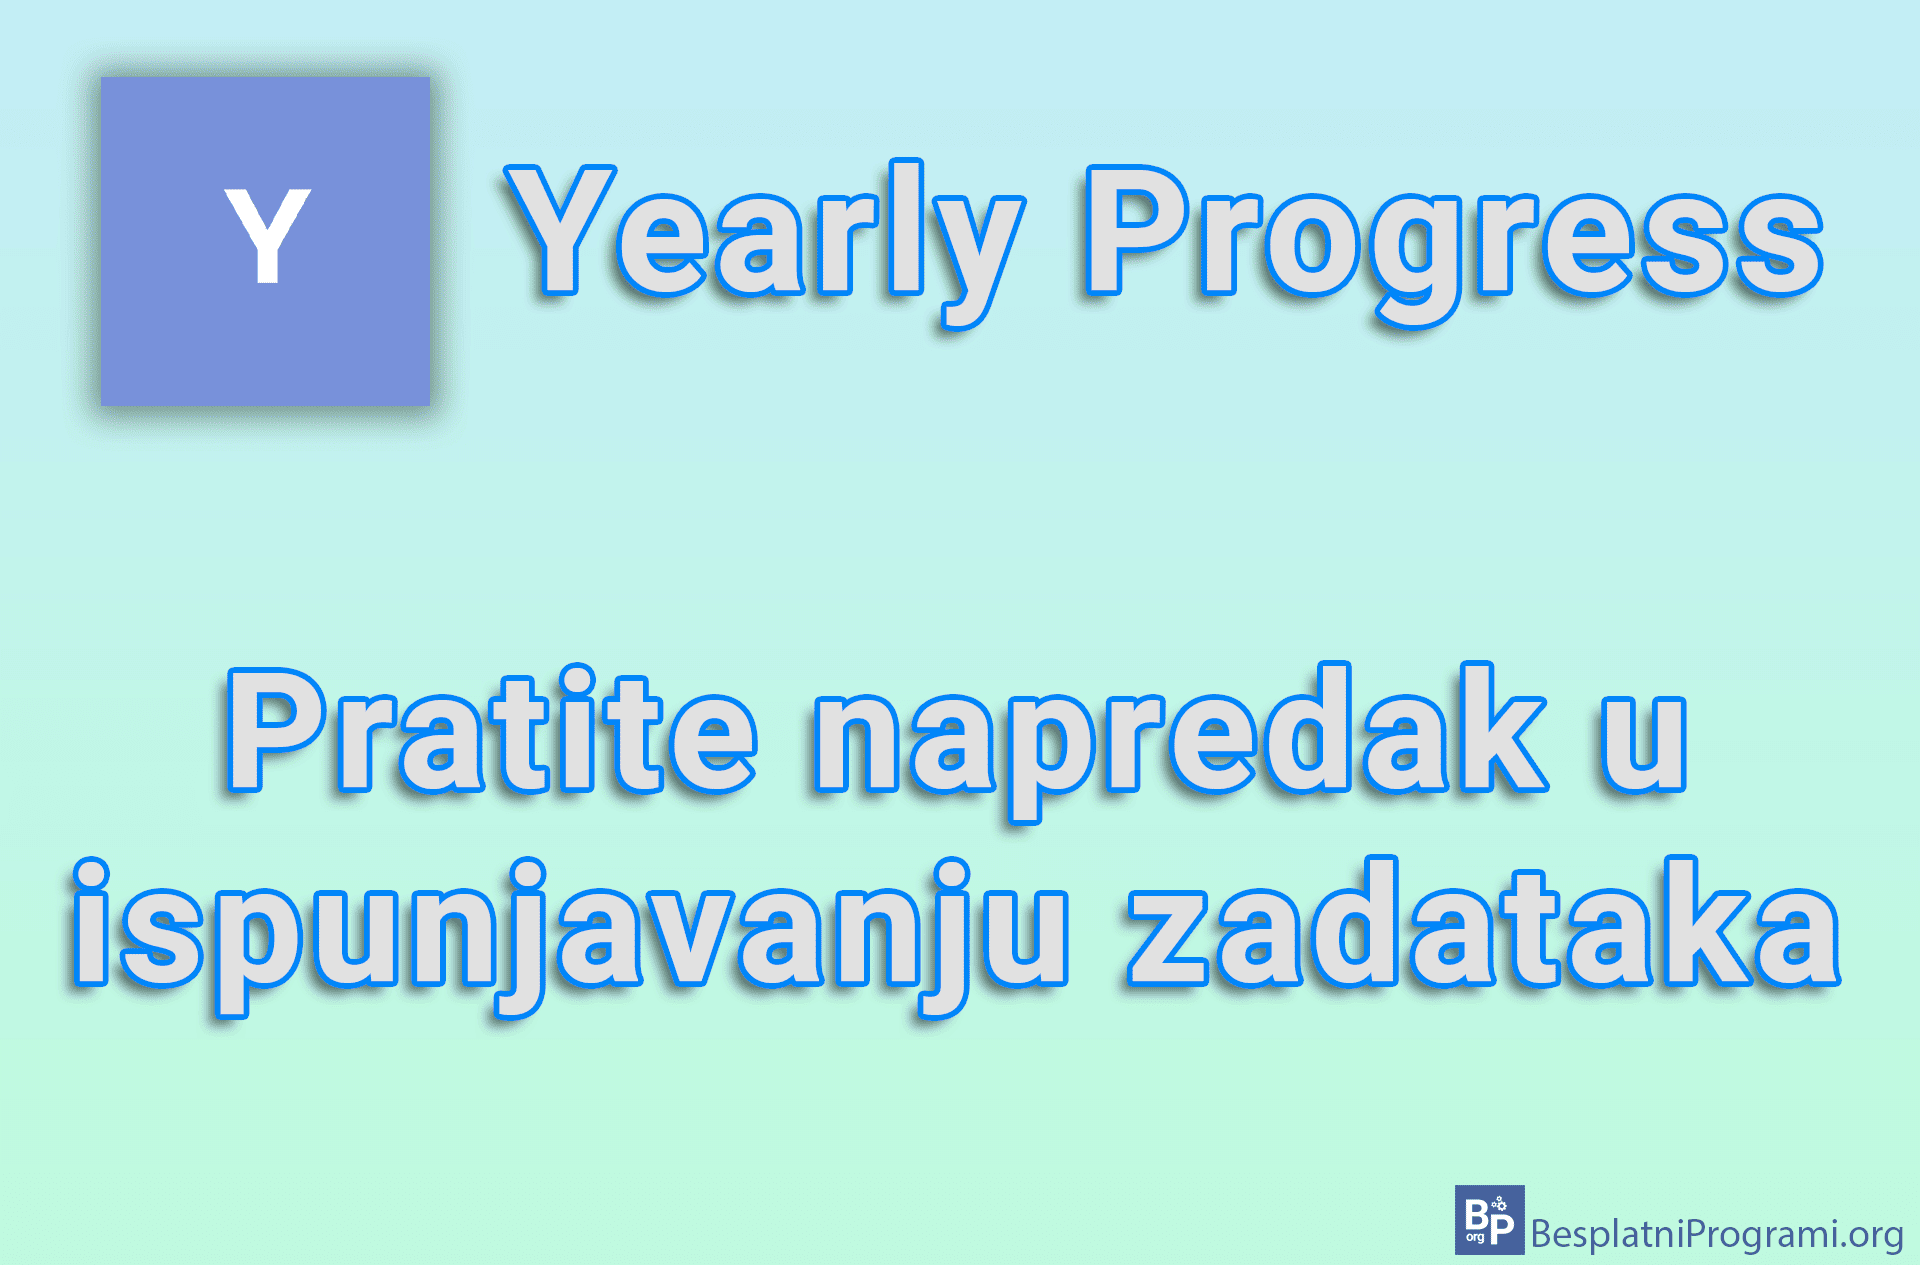 Yearly Progress - Pratite napredak u ispunjavanju zadataka